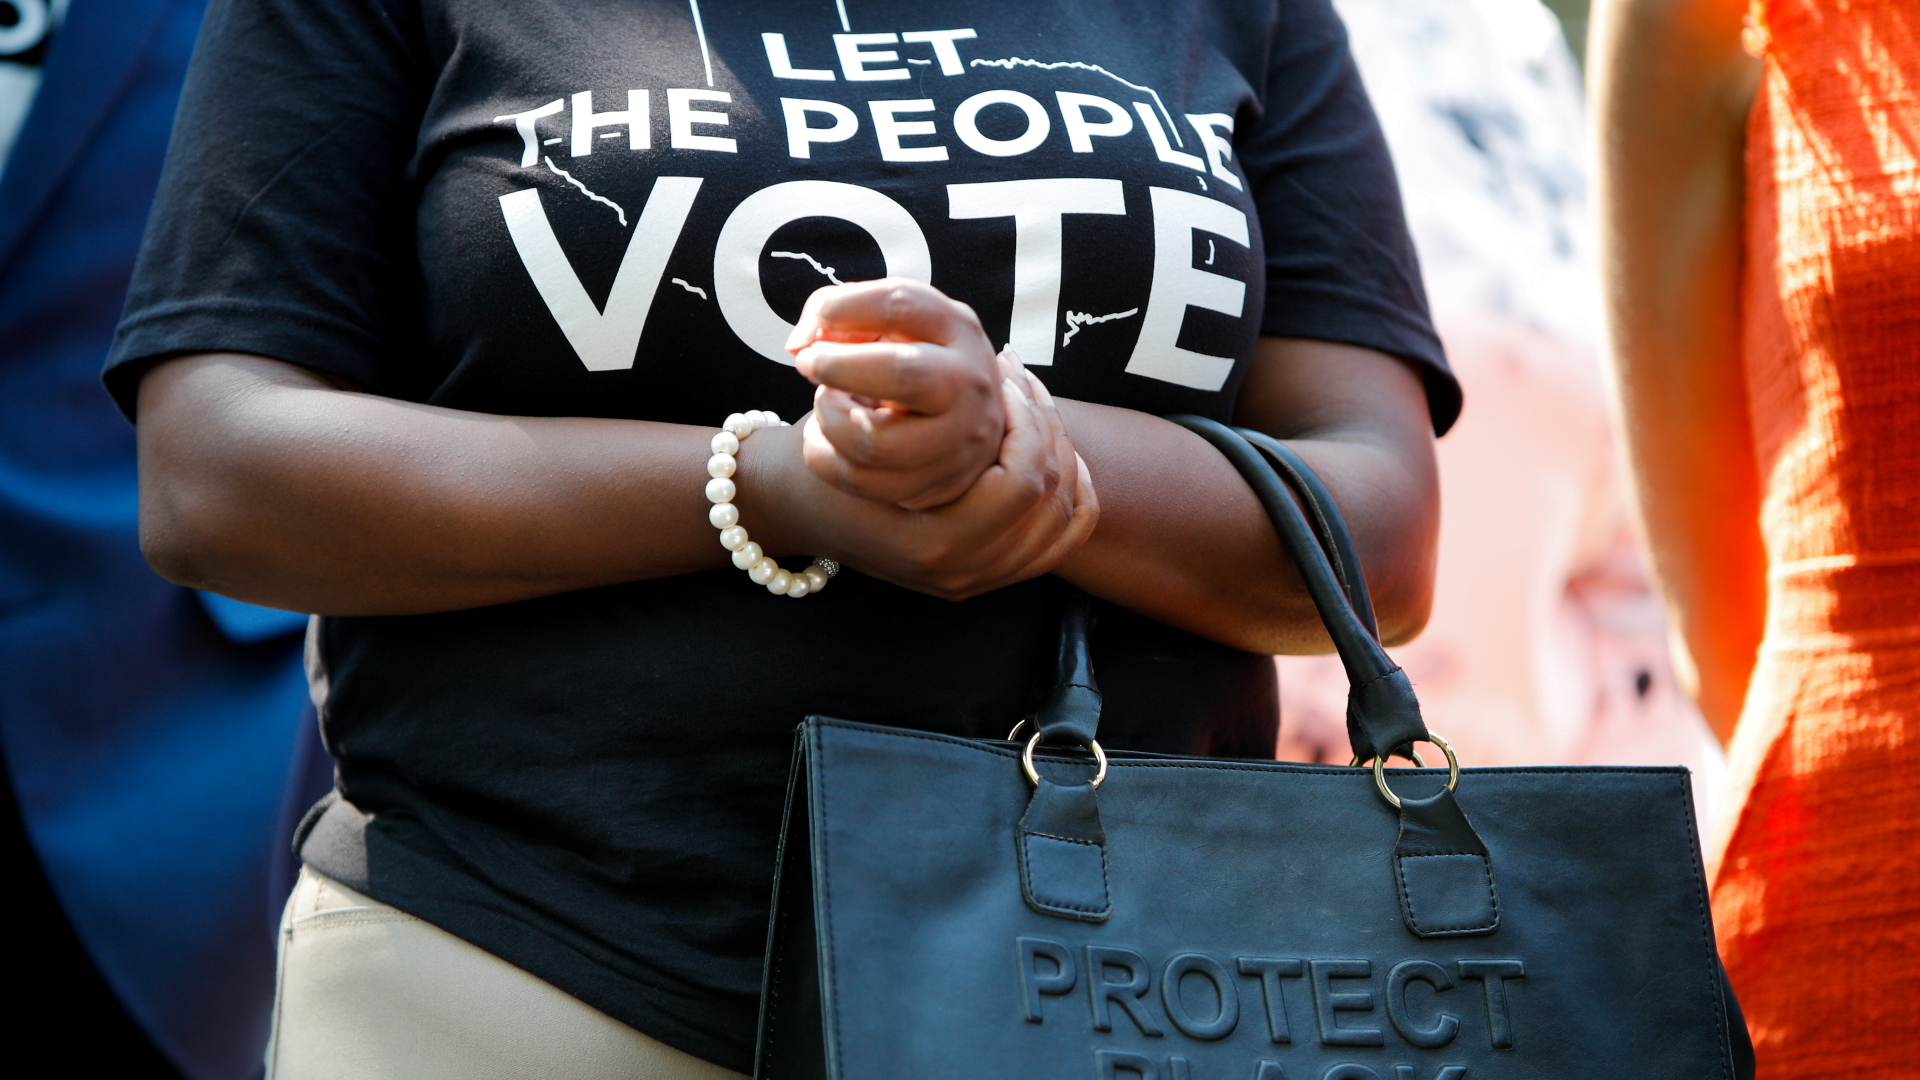 "Lasst die Menschen wählen" steht auf dem T-Shirt einer Frau. | REUTERS